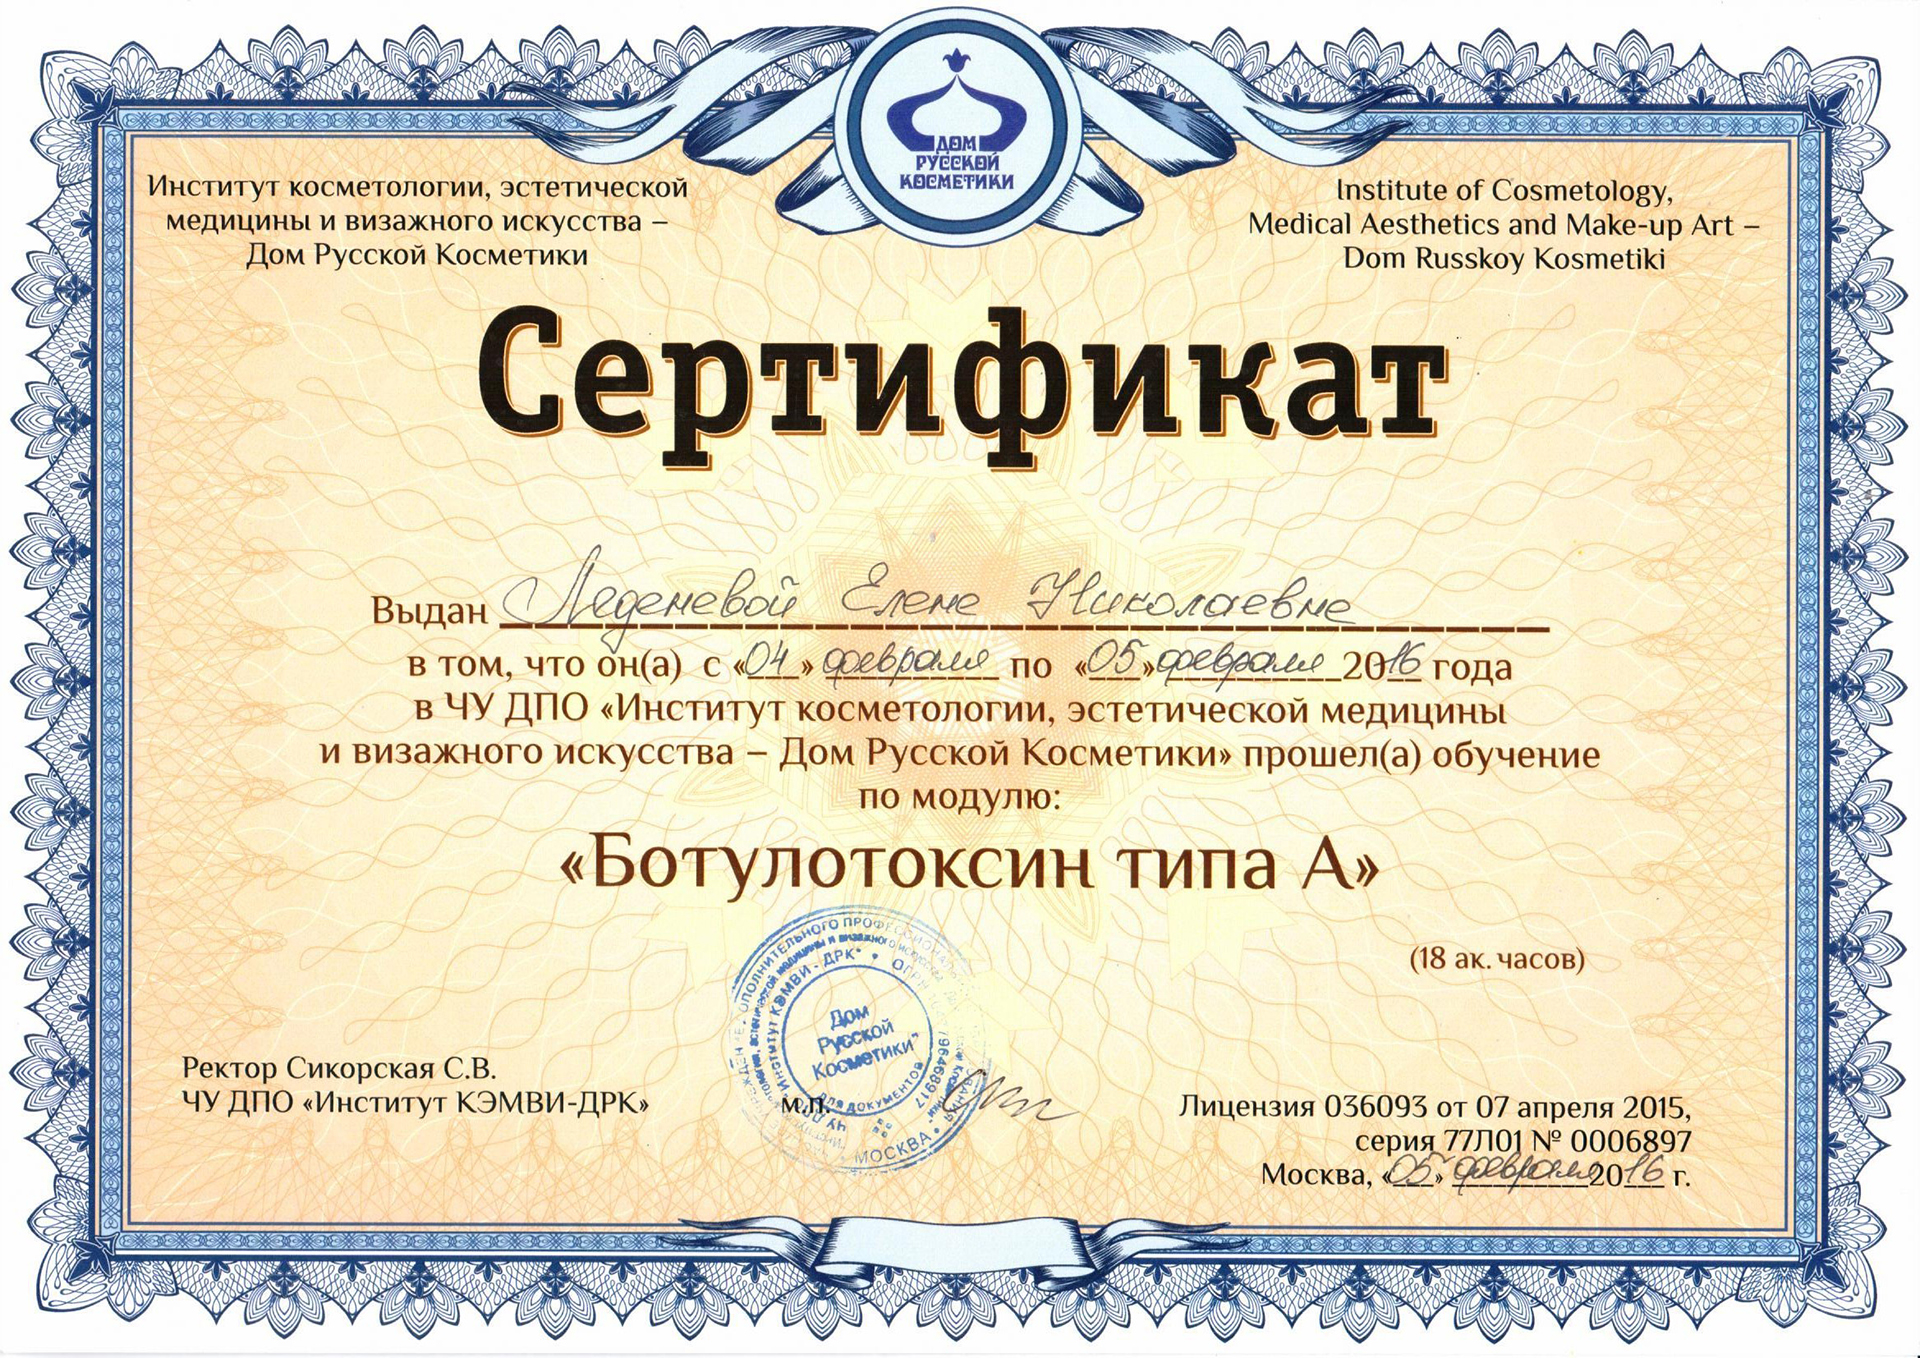 Сертификат Леденева Елена Николаевна